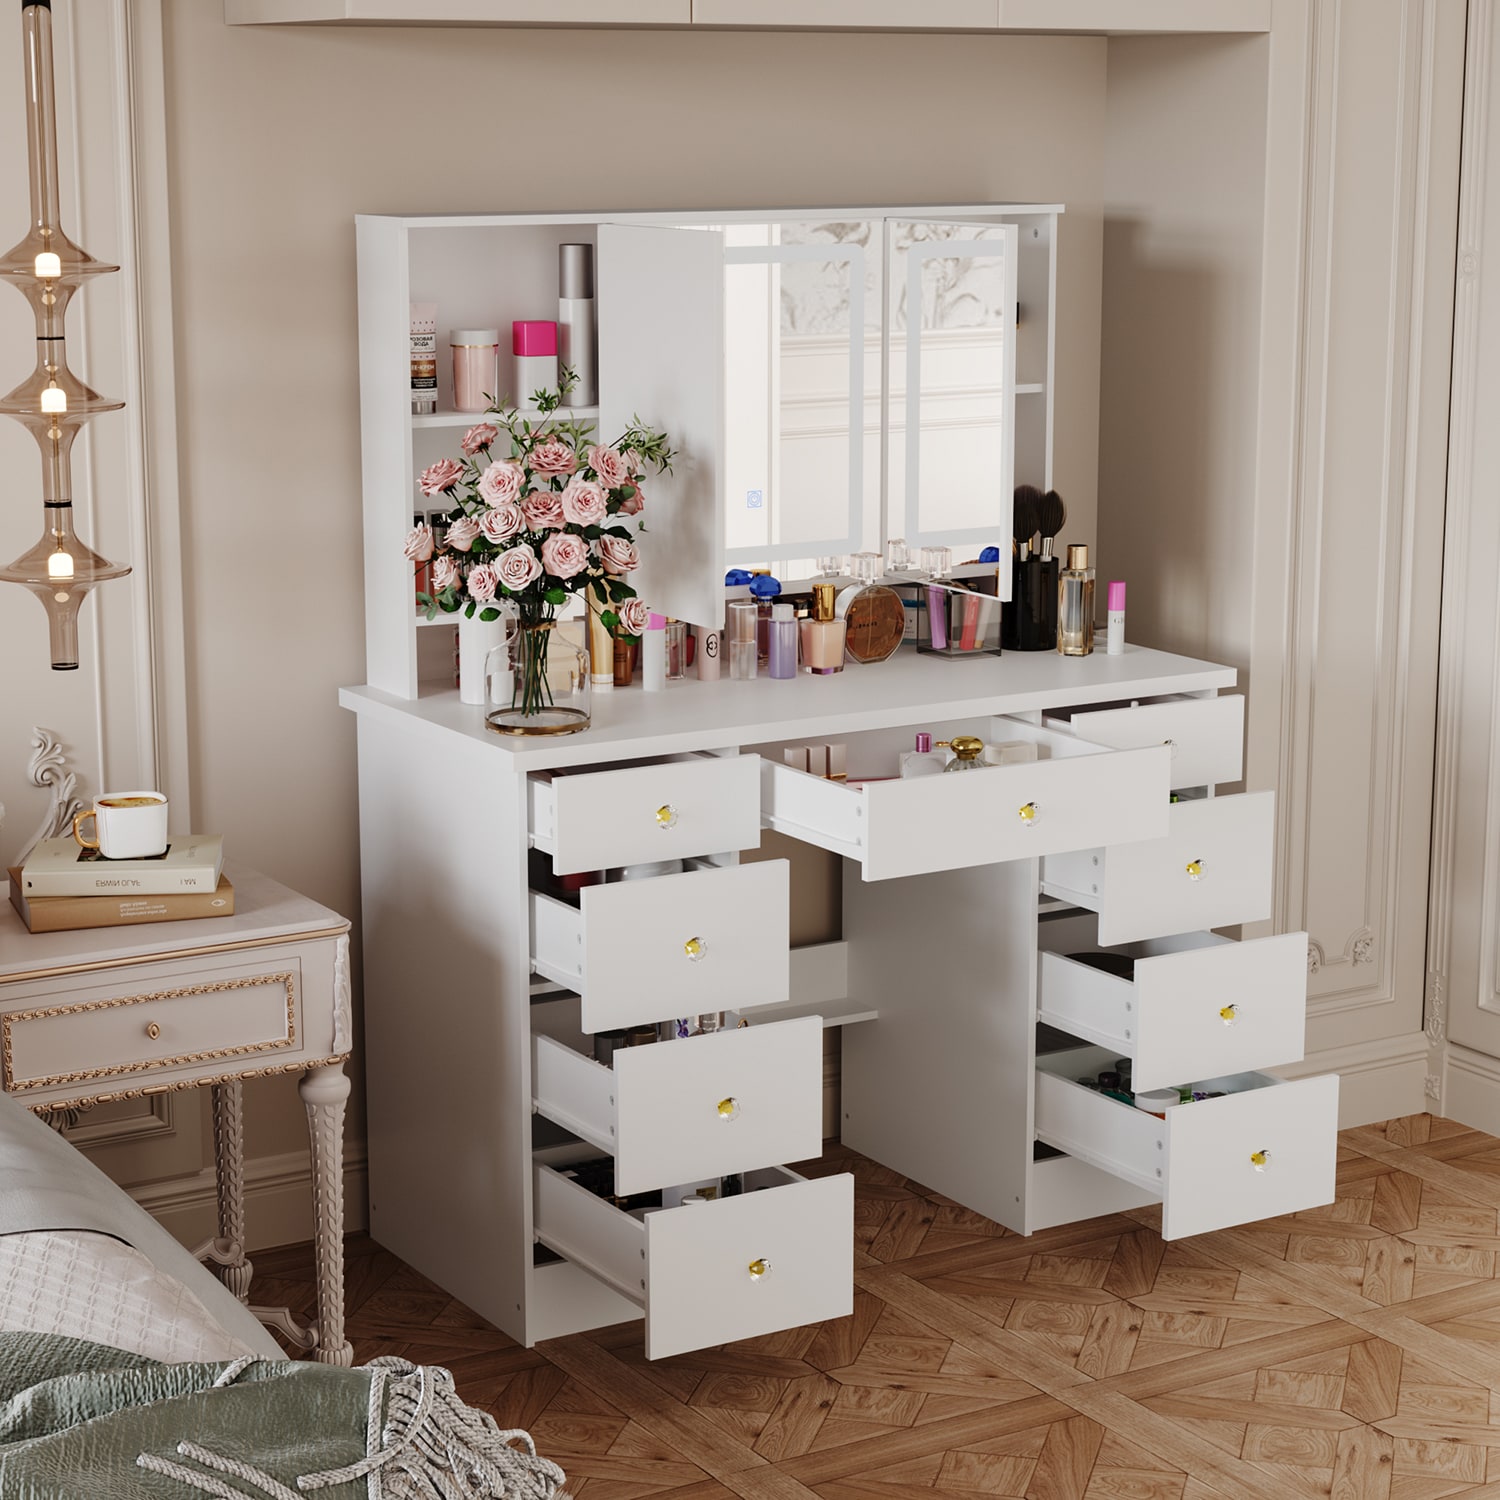 43.3W Makeup Vanity White Vanity Desk with Hidden Storage Shelves